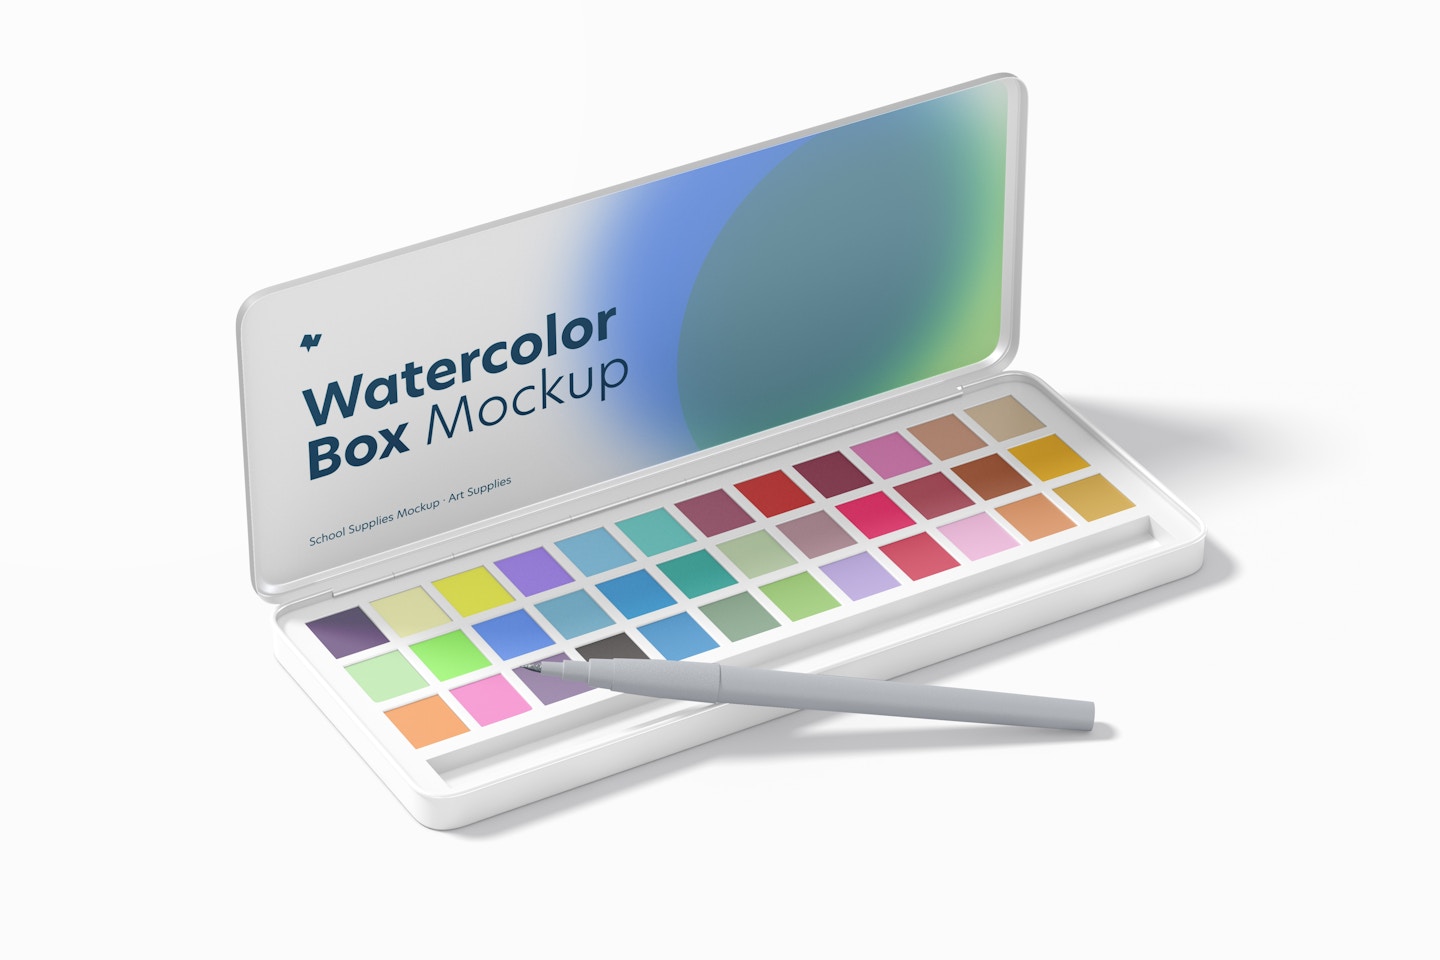 Watercolor Box Mockup